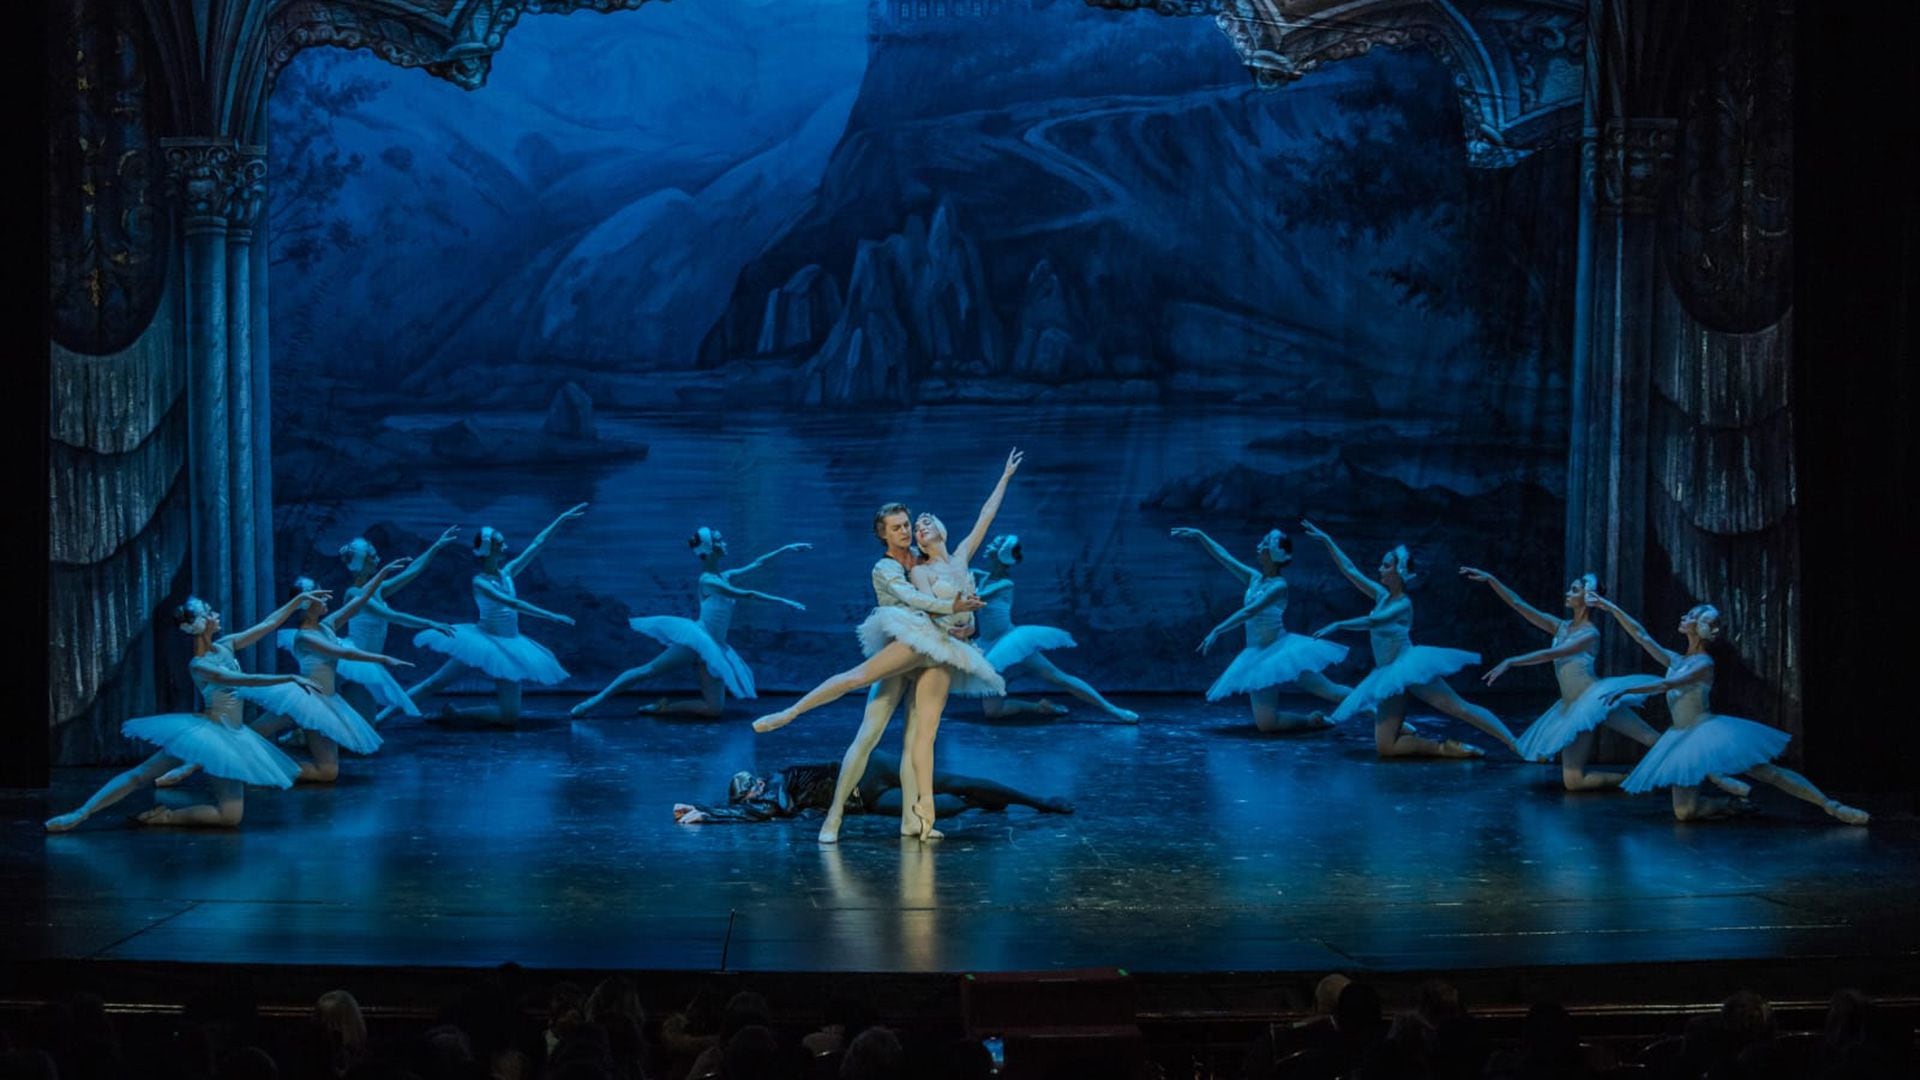 "'El lago de los cisnes' es la obra más querida por el público", considera Alexander Volchkov, primer bailarín del Ballet Bolshoi